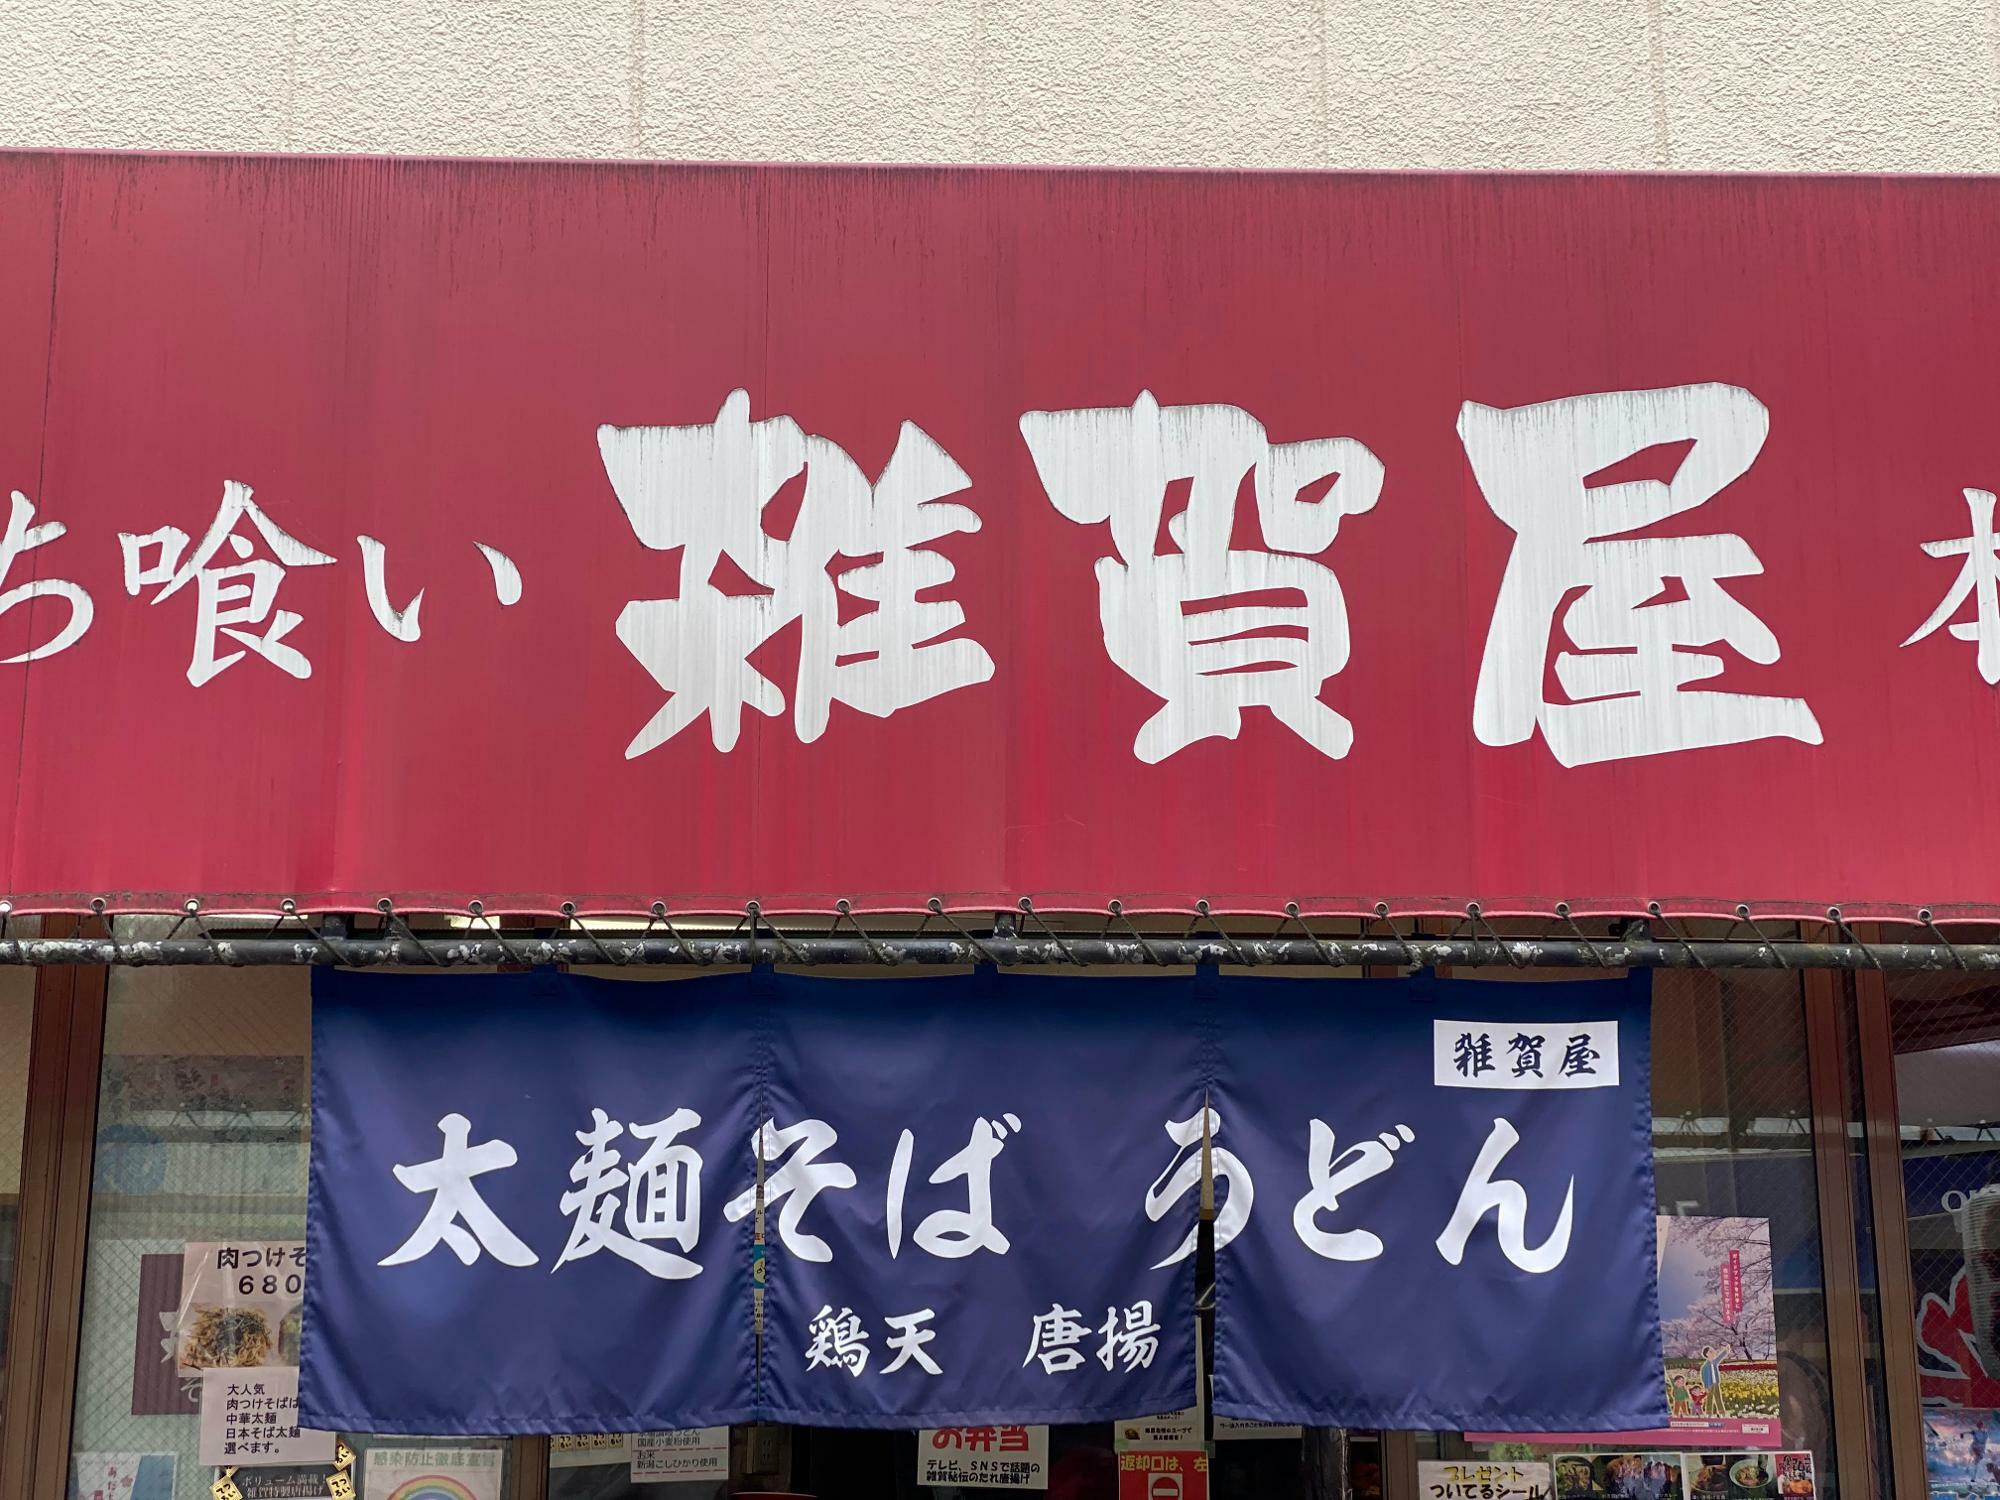 「立ち喰いそば 雑賀屋 本店」は、牛田駅と京成関屋駅のちょうど間、赤いテントが目印です